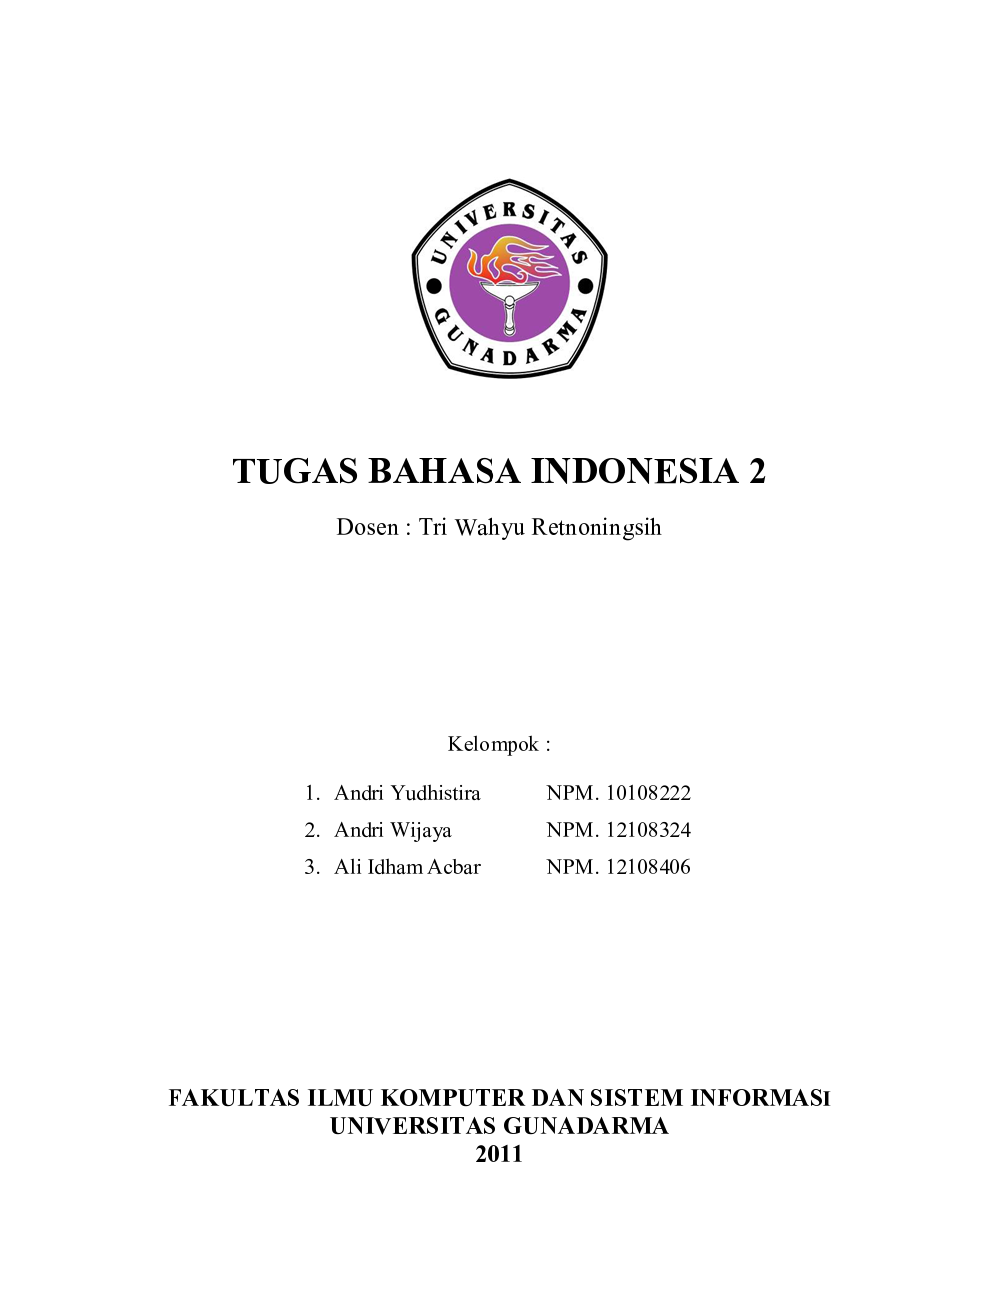 makalah bahasa indonesia pdf